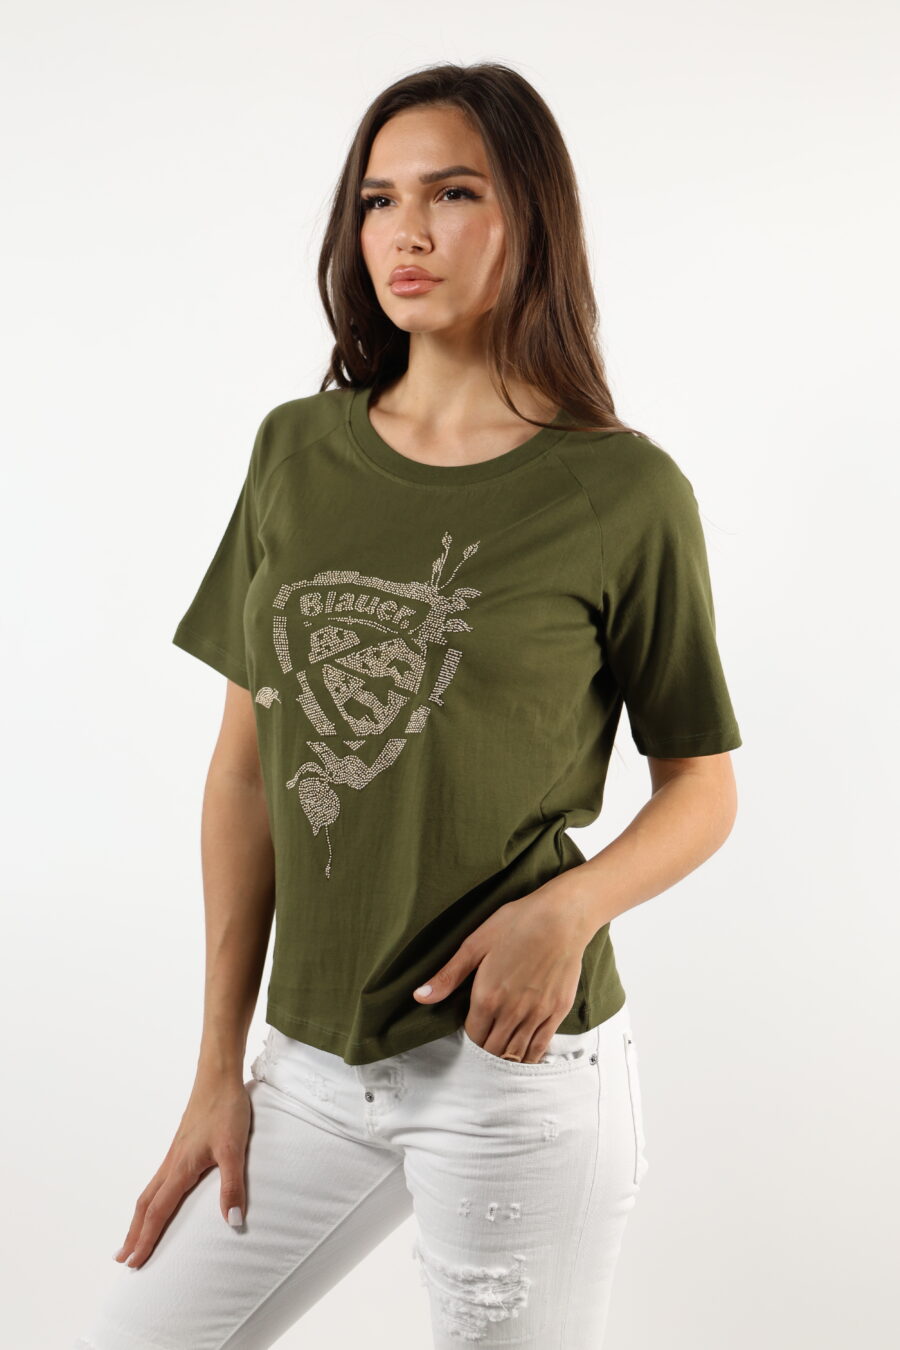 T-shirt verde militar com emblema dourado - 110618